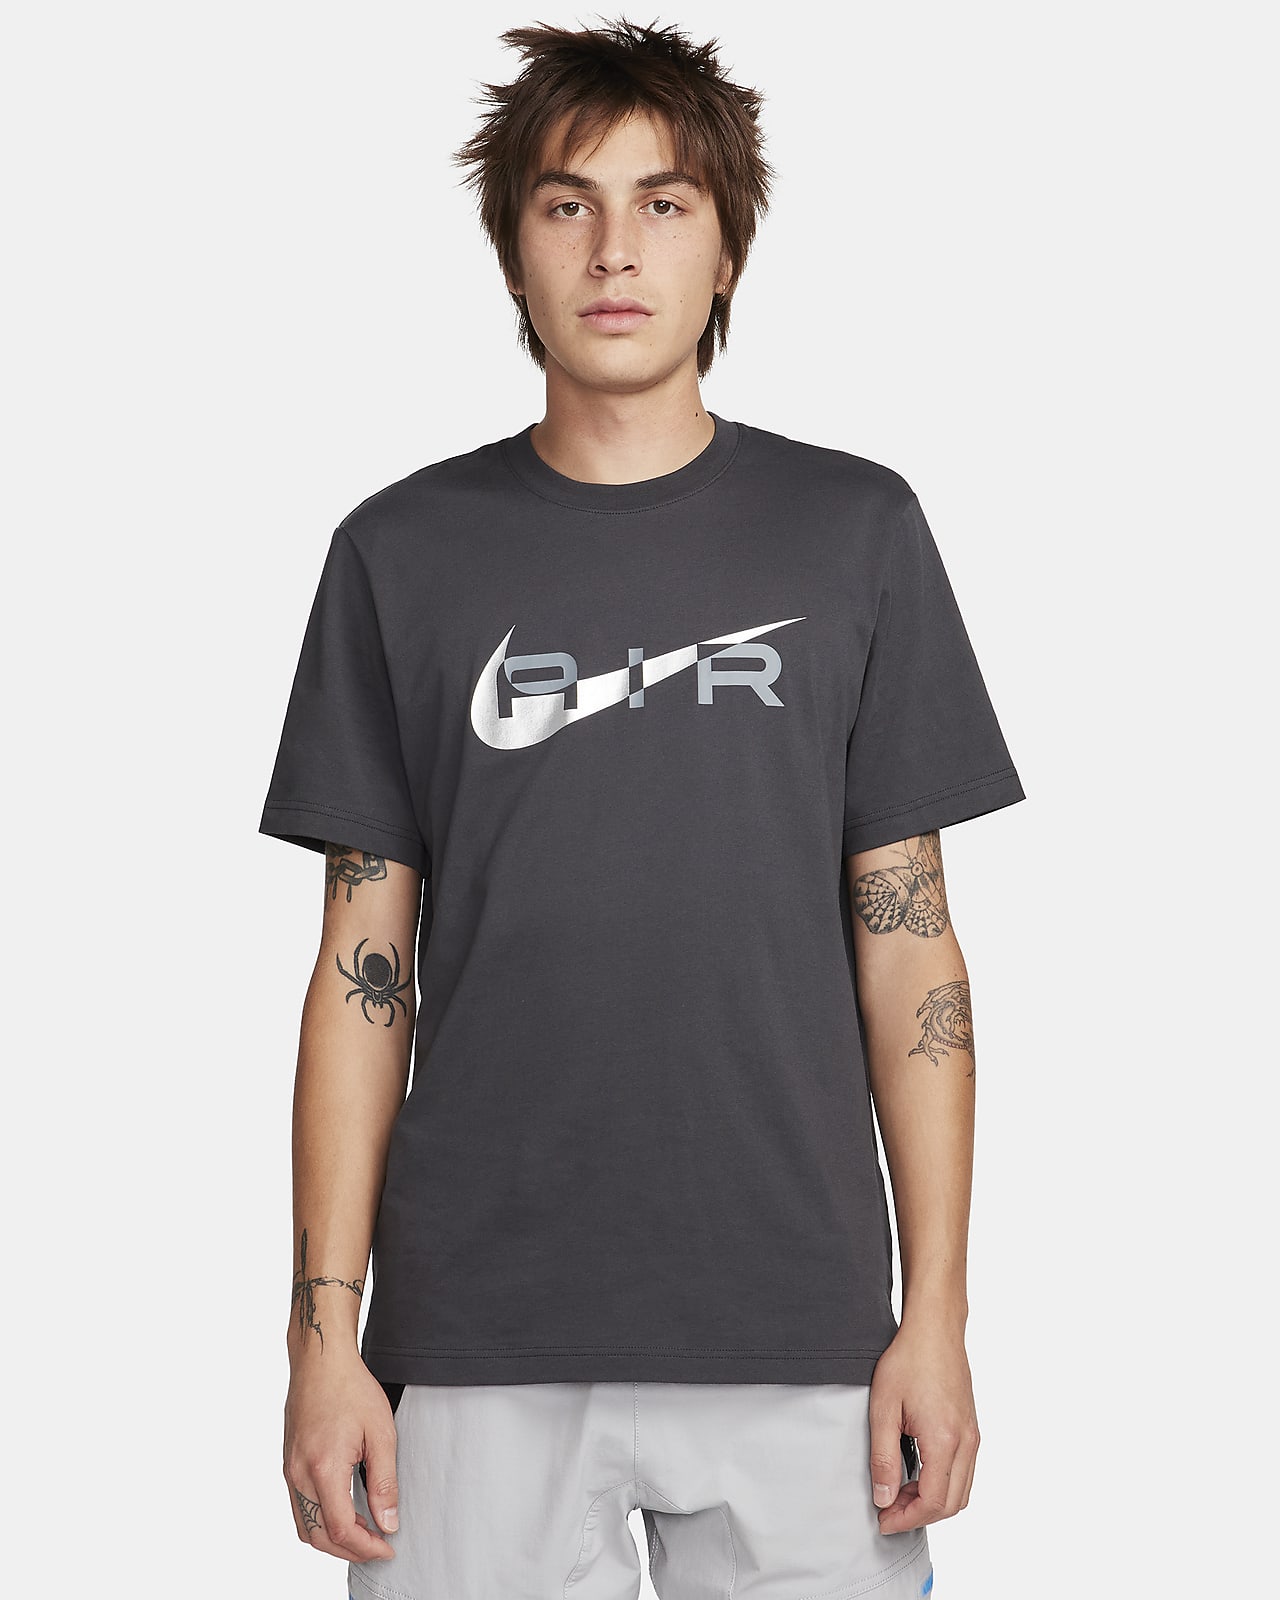 Men's Tops & T-shirts. Nike CZ